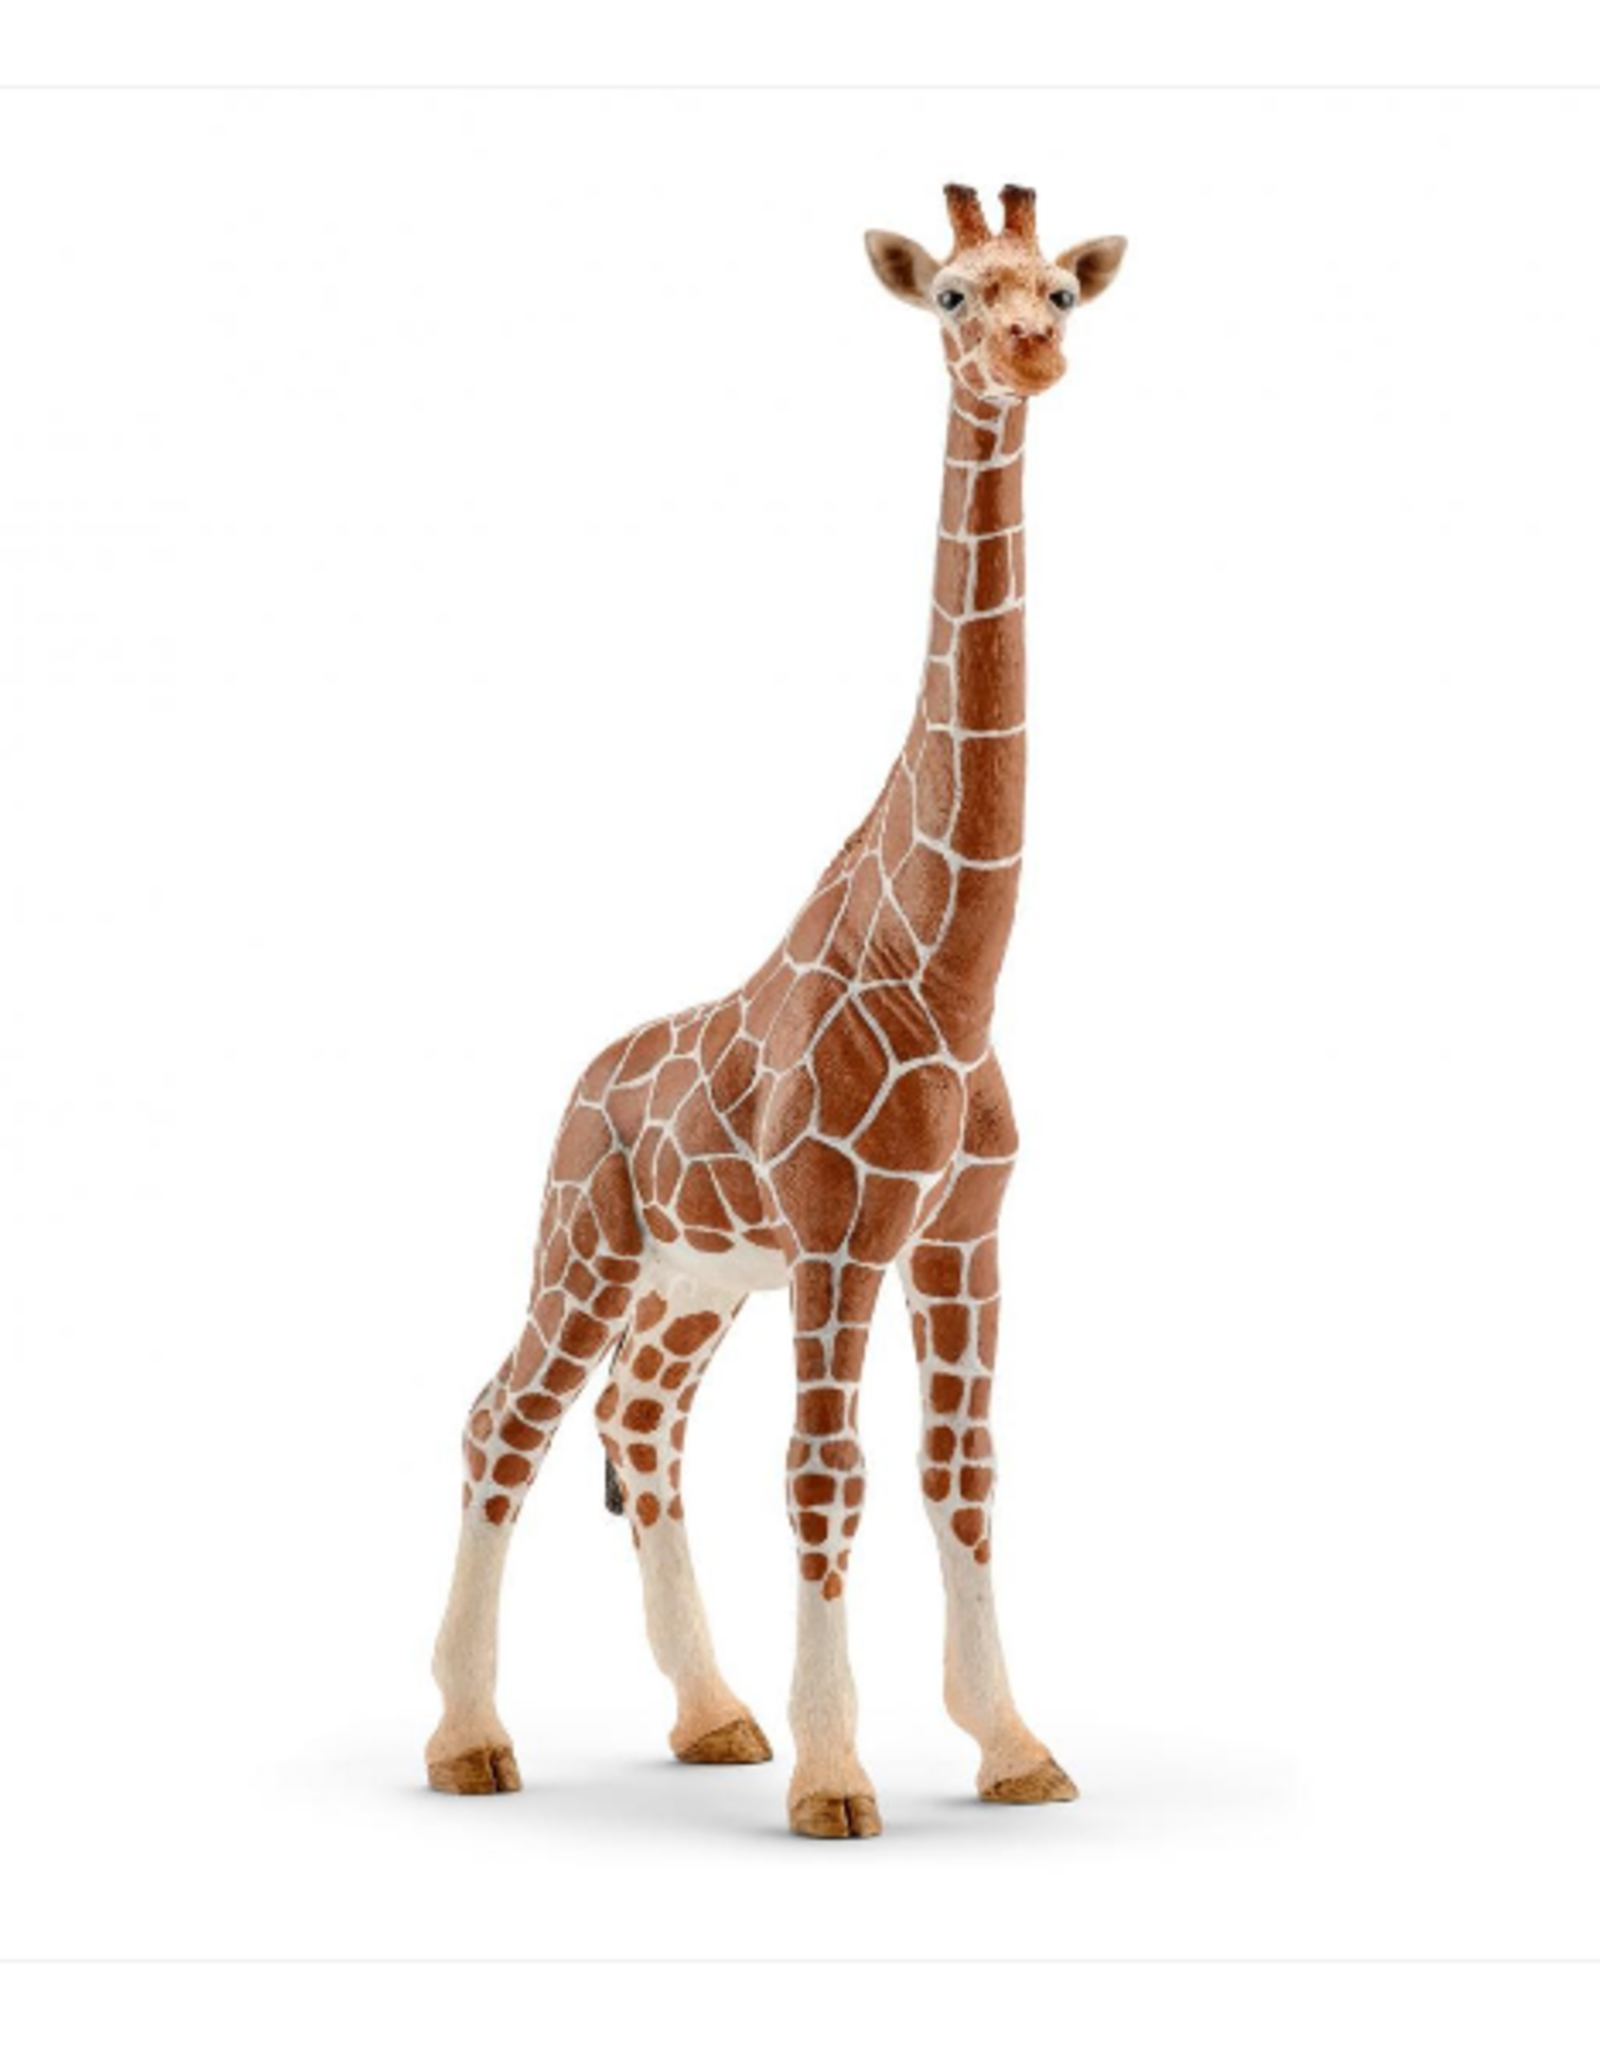 Schleich Schleich - Wild Life - 14750 - Giraffe Female